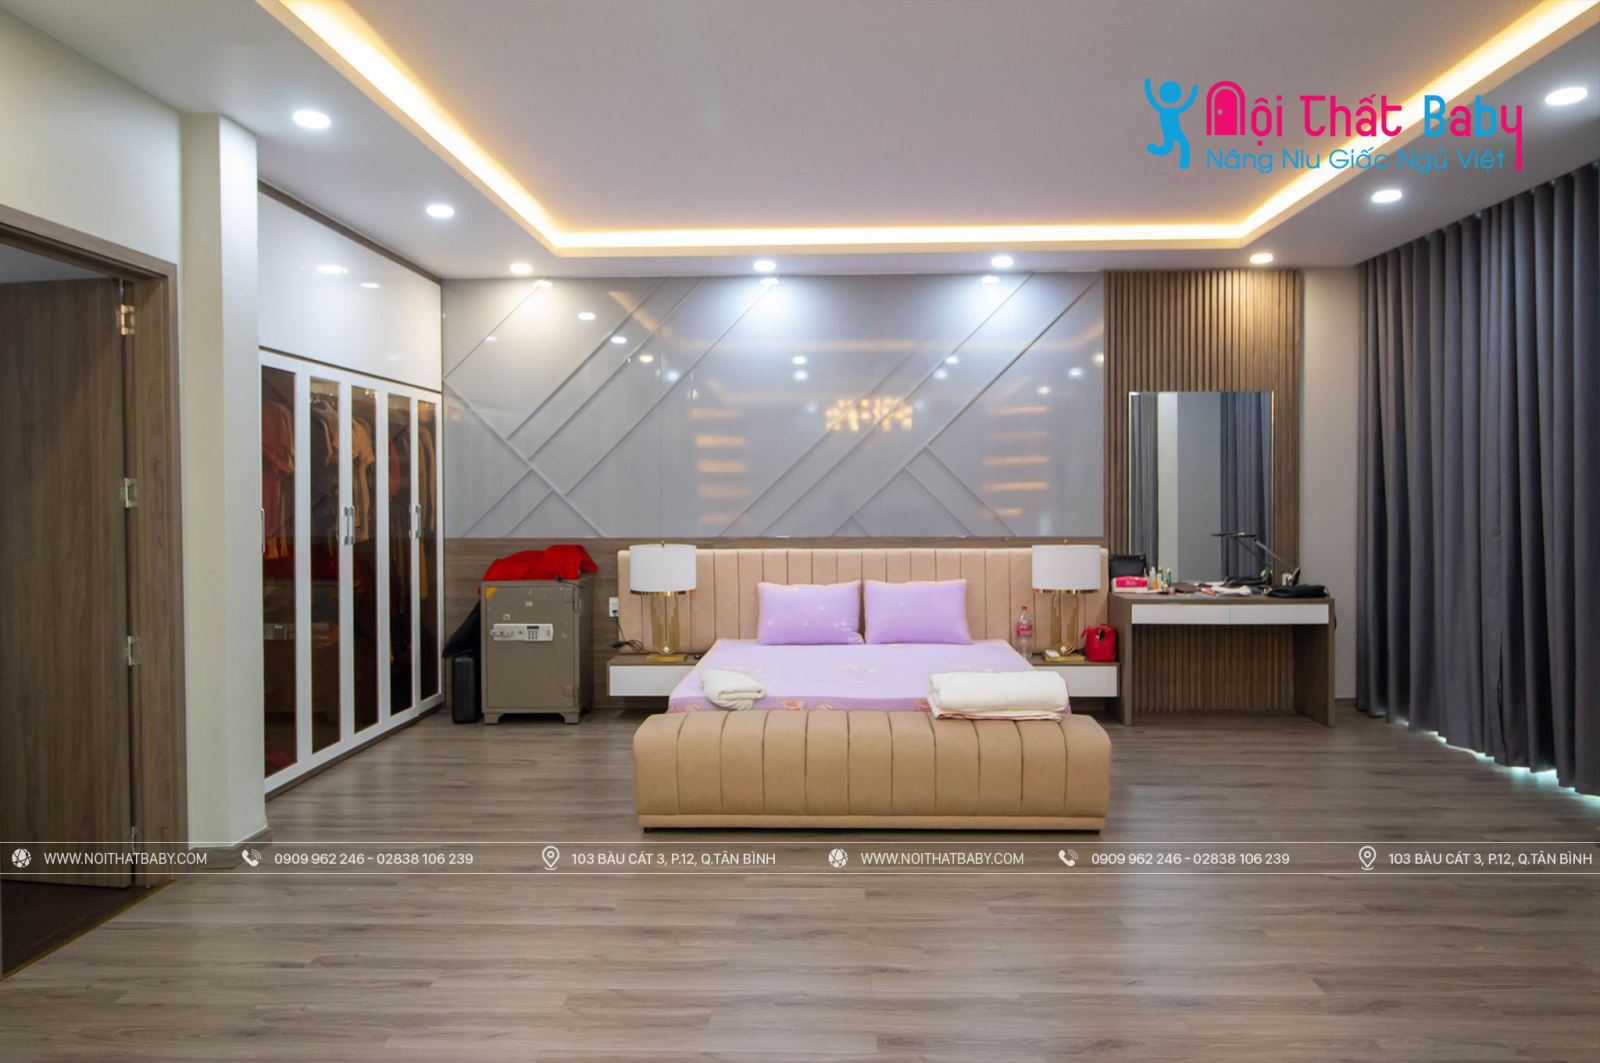 Hình ảnh công trình thực tế nội thất nguyên căn nhà chị Oanh Quận Tân Bình